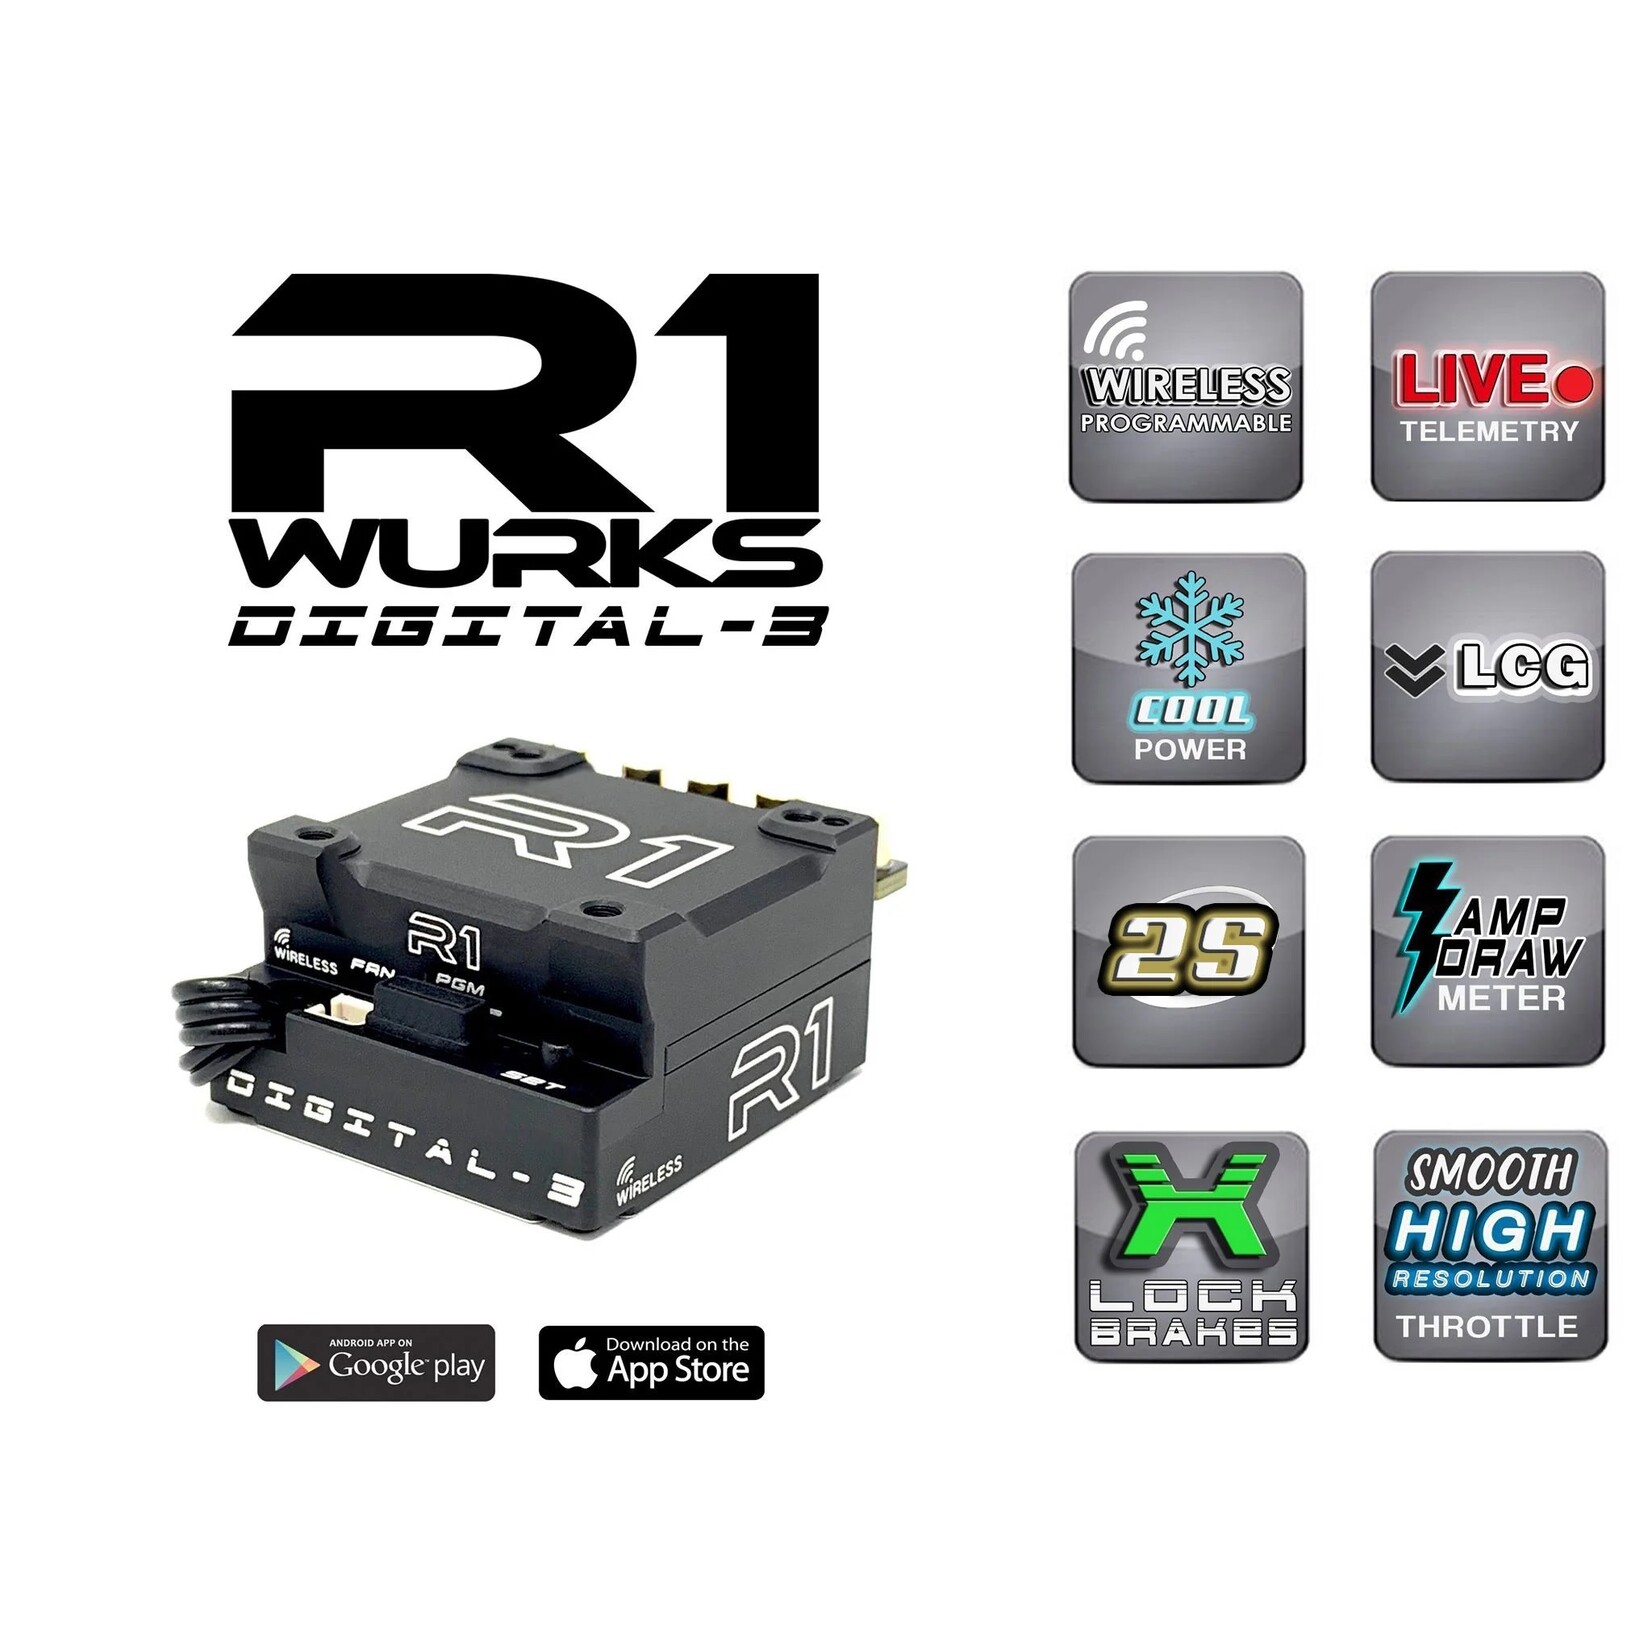 R1 Wurks R1 Wurks Digital-3 MOD ESC #040020